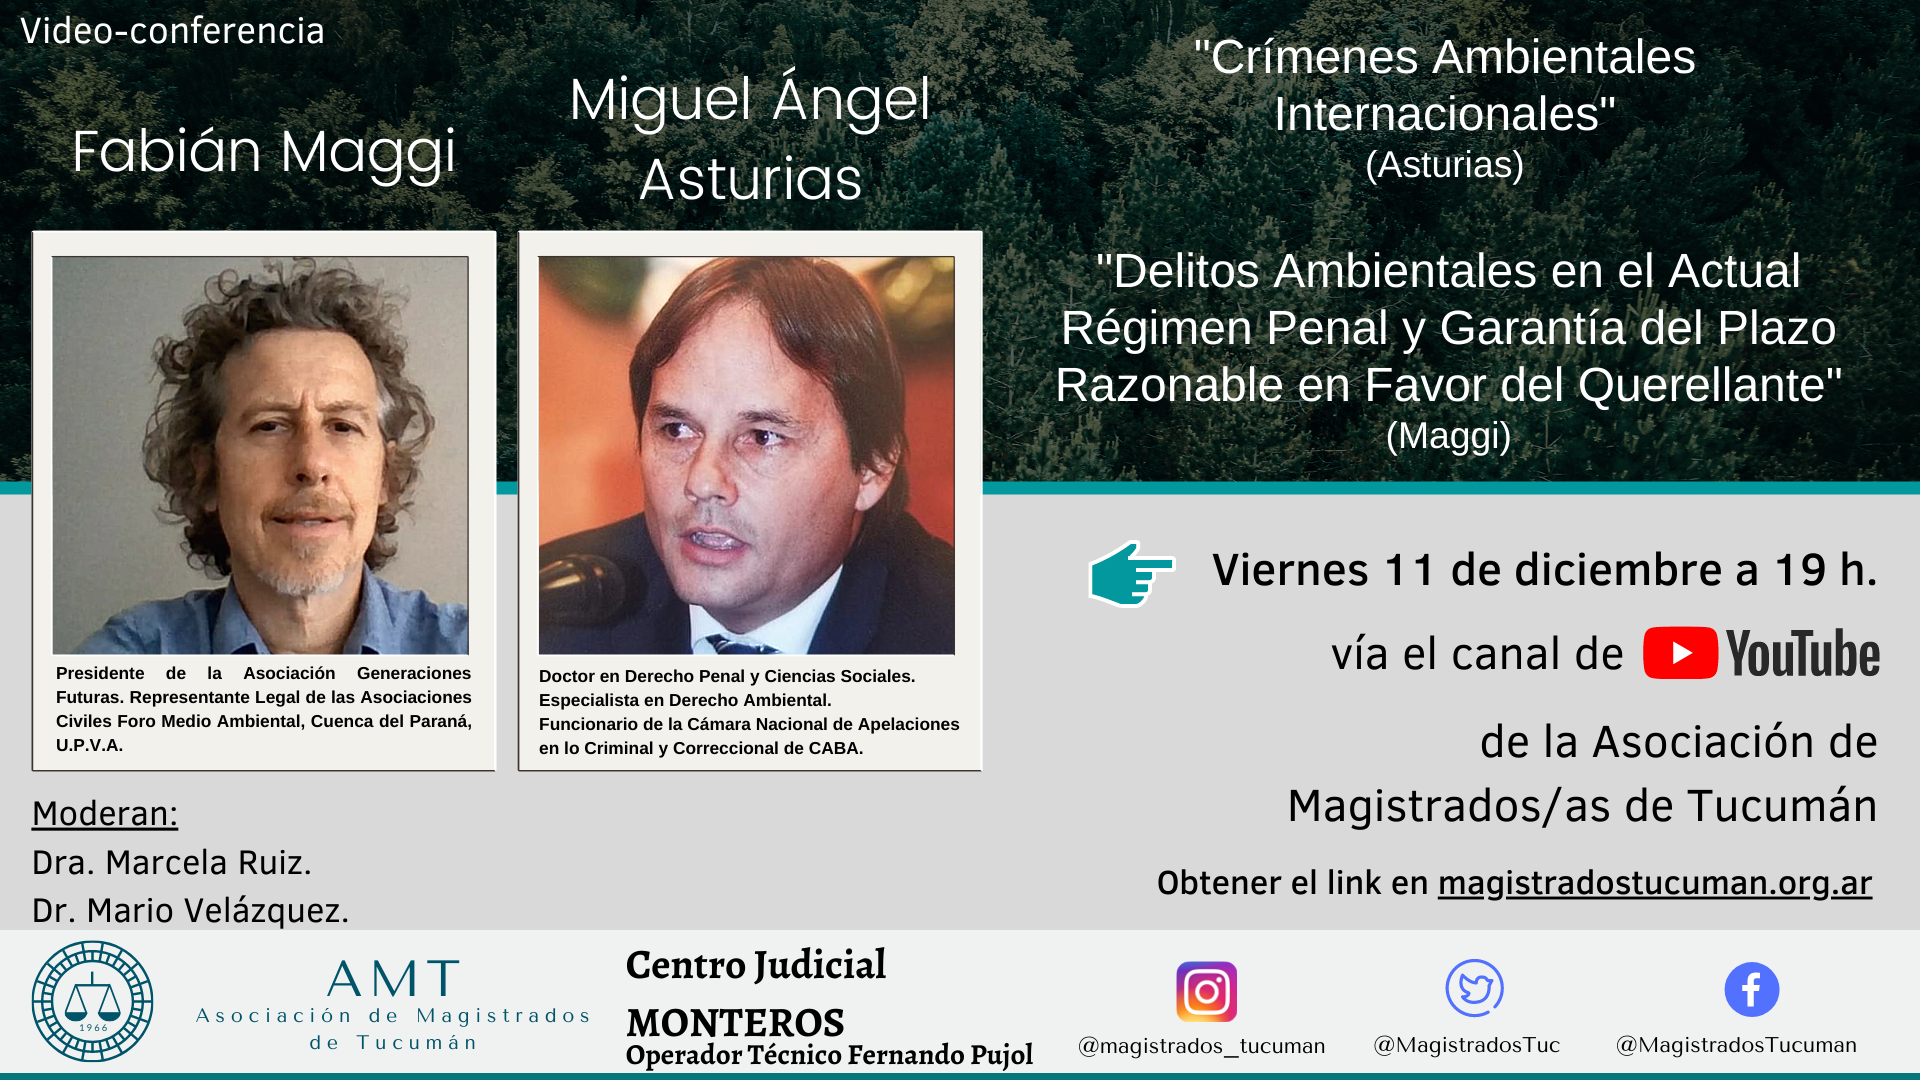 Vuelva a ver las conferencias de Fabián Maggi y Miguel A. Asturias sobre derecho ambiental